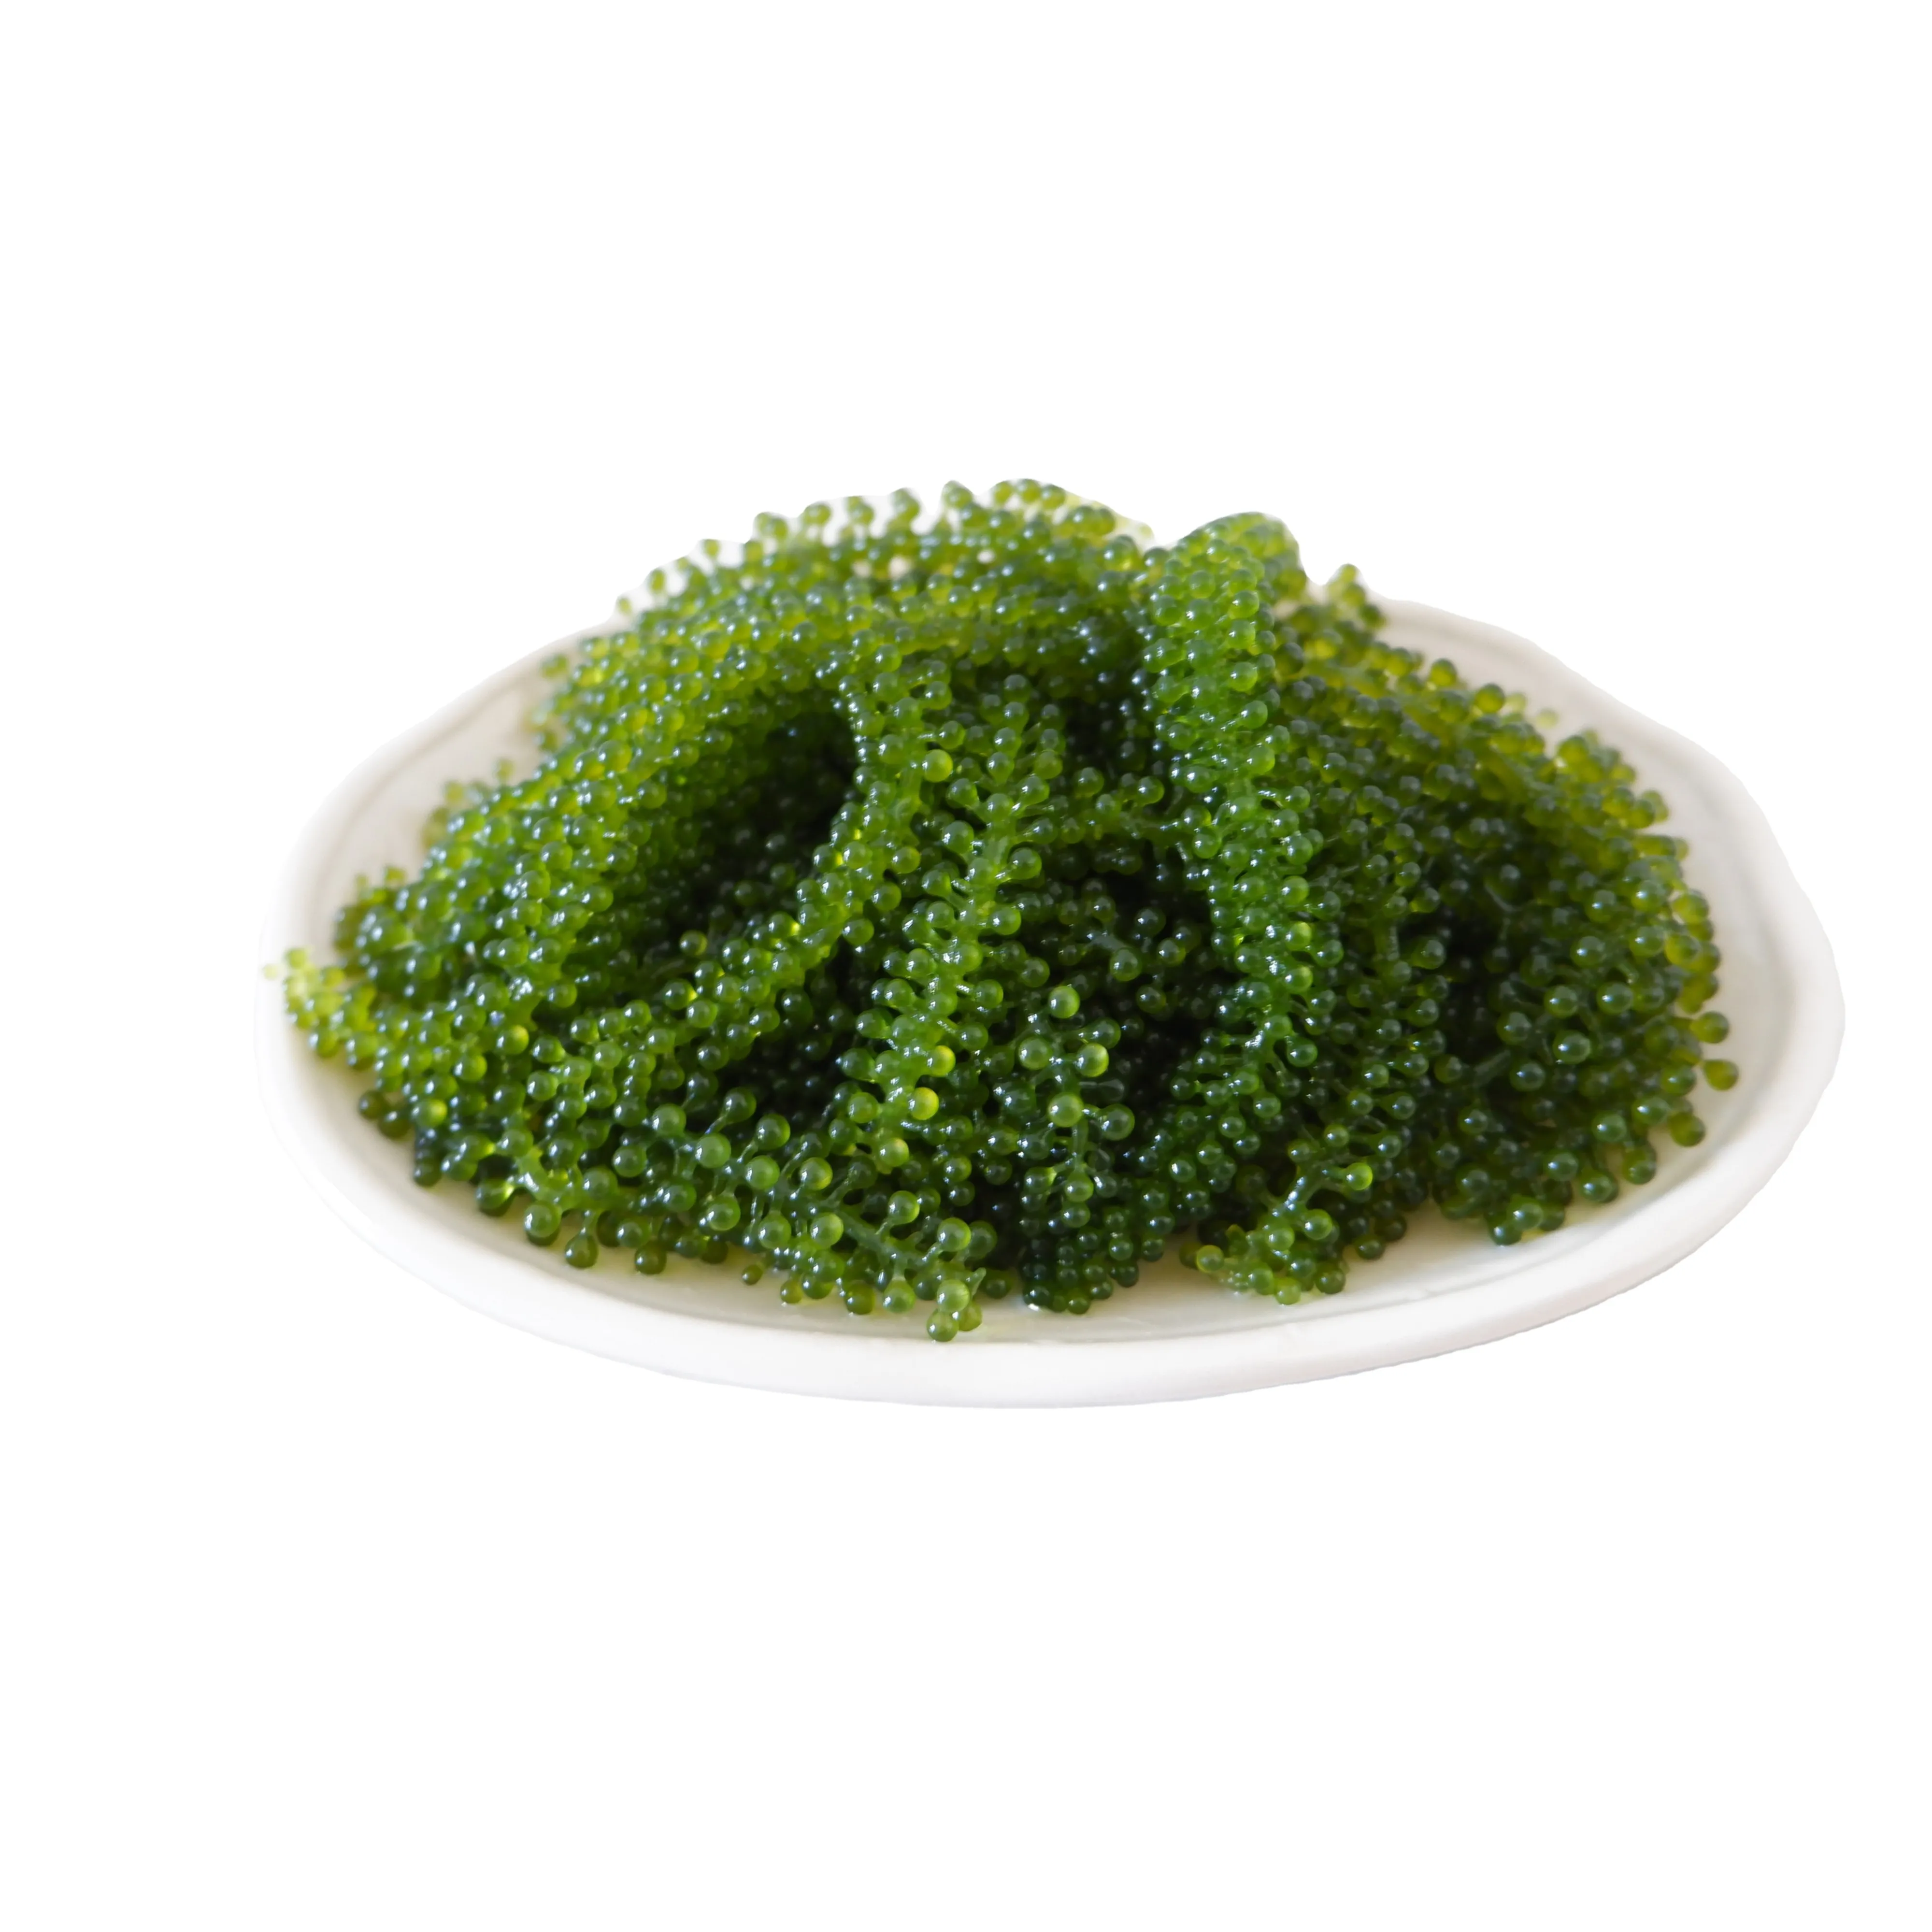 องุ่นทะเลสดออร์แกนิกอาหารสีเขียวจากเวียดนาม/Coccoloba Uvifera/สาหร่ายสด